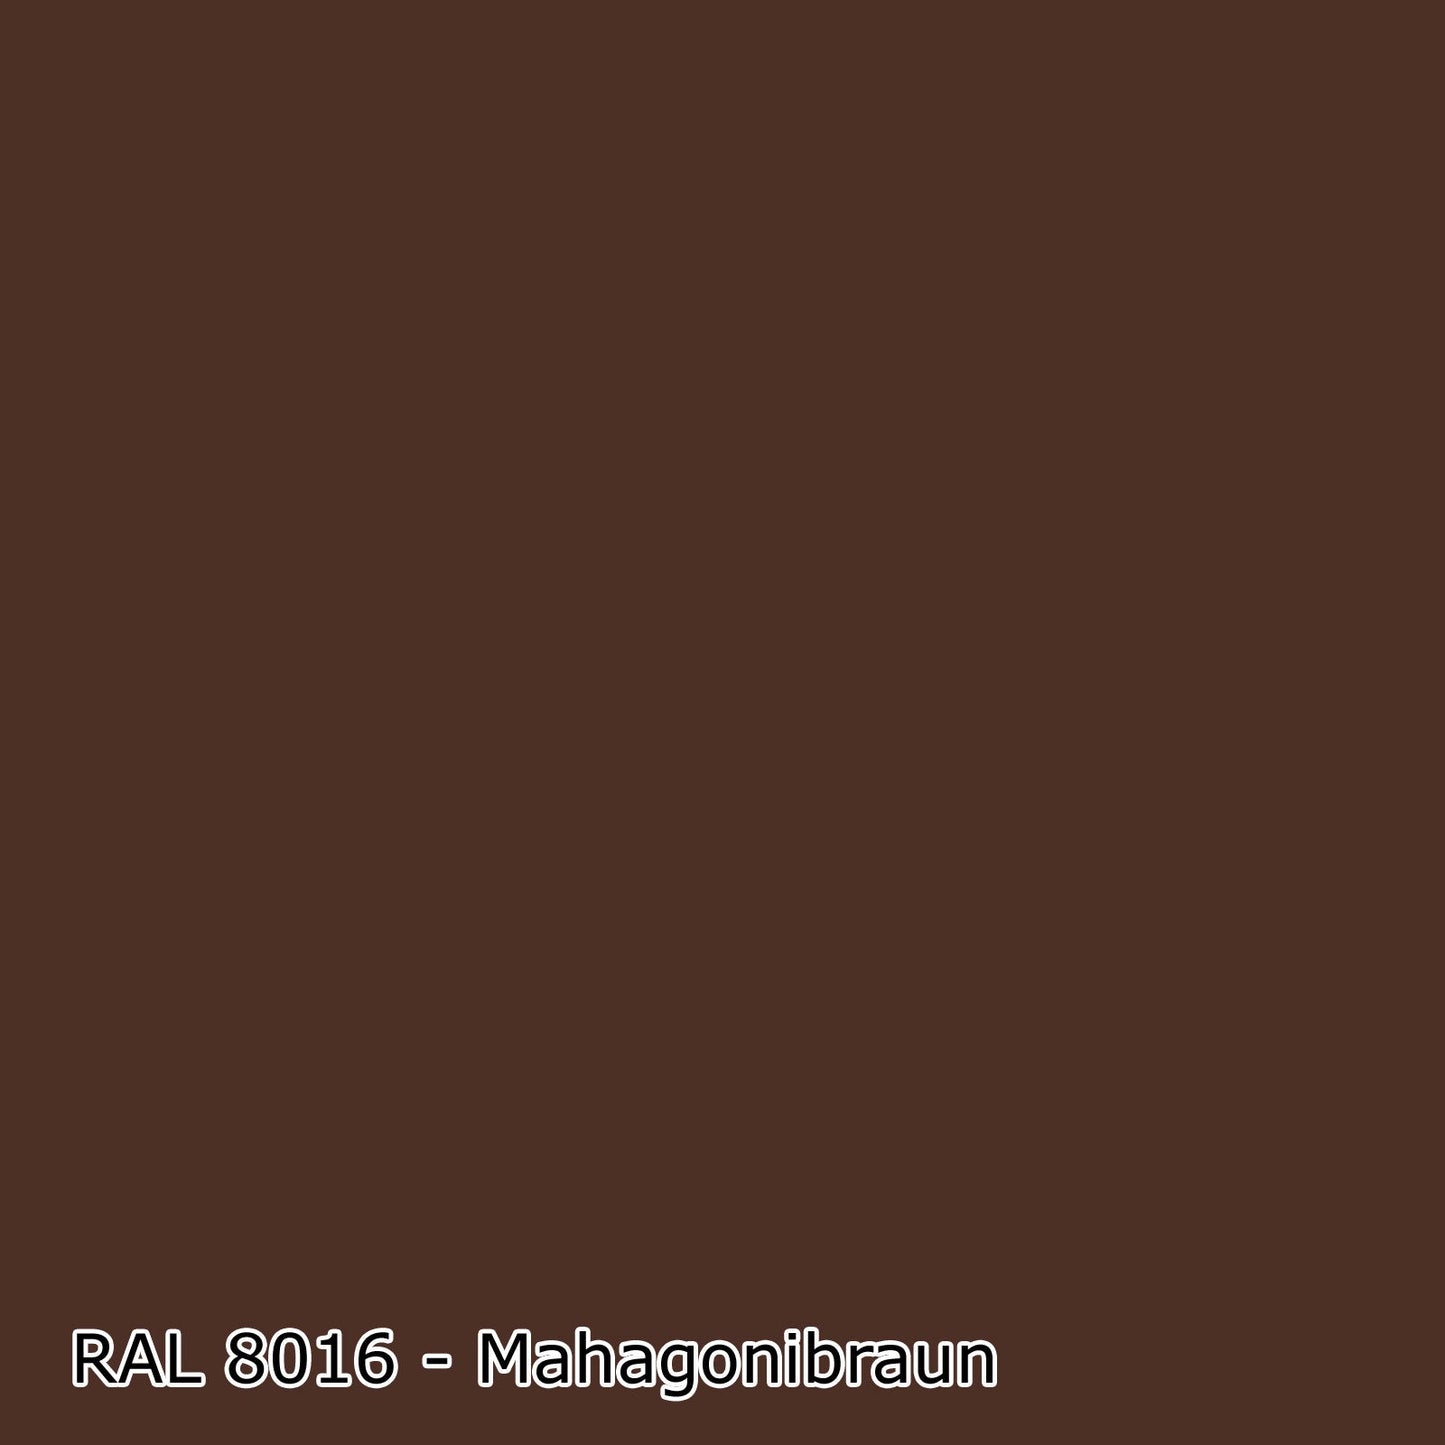 10 L Latexfarbe, RAL Farbwahl - SEIDENMATT (RAL 6008 - 9018)